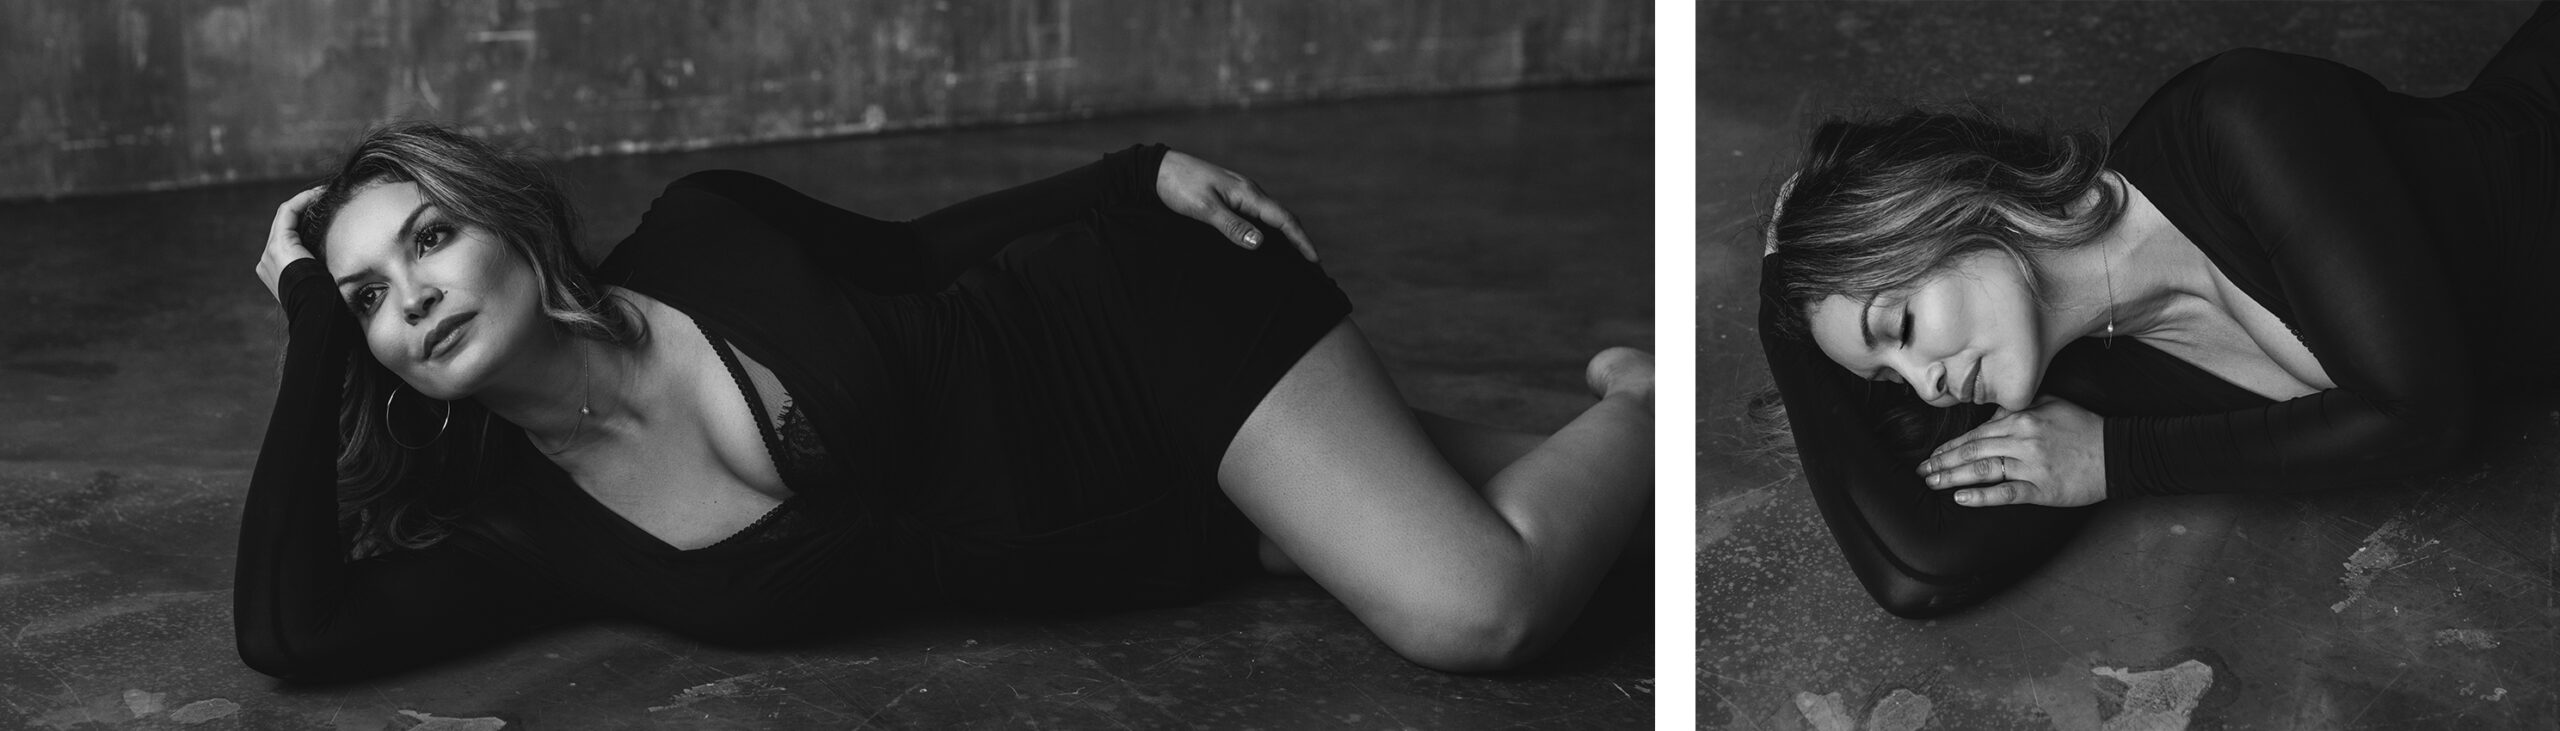 Zwei Bilder einer Frau die in einem Bodycondress auf dem Boden liegt und für ein Boudoir Fotoshooting posiert